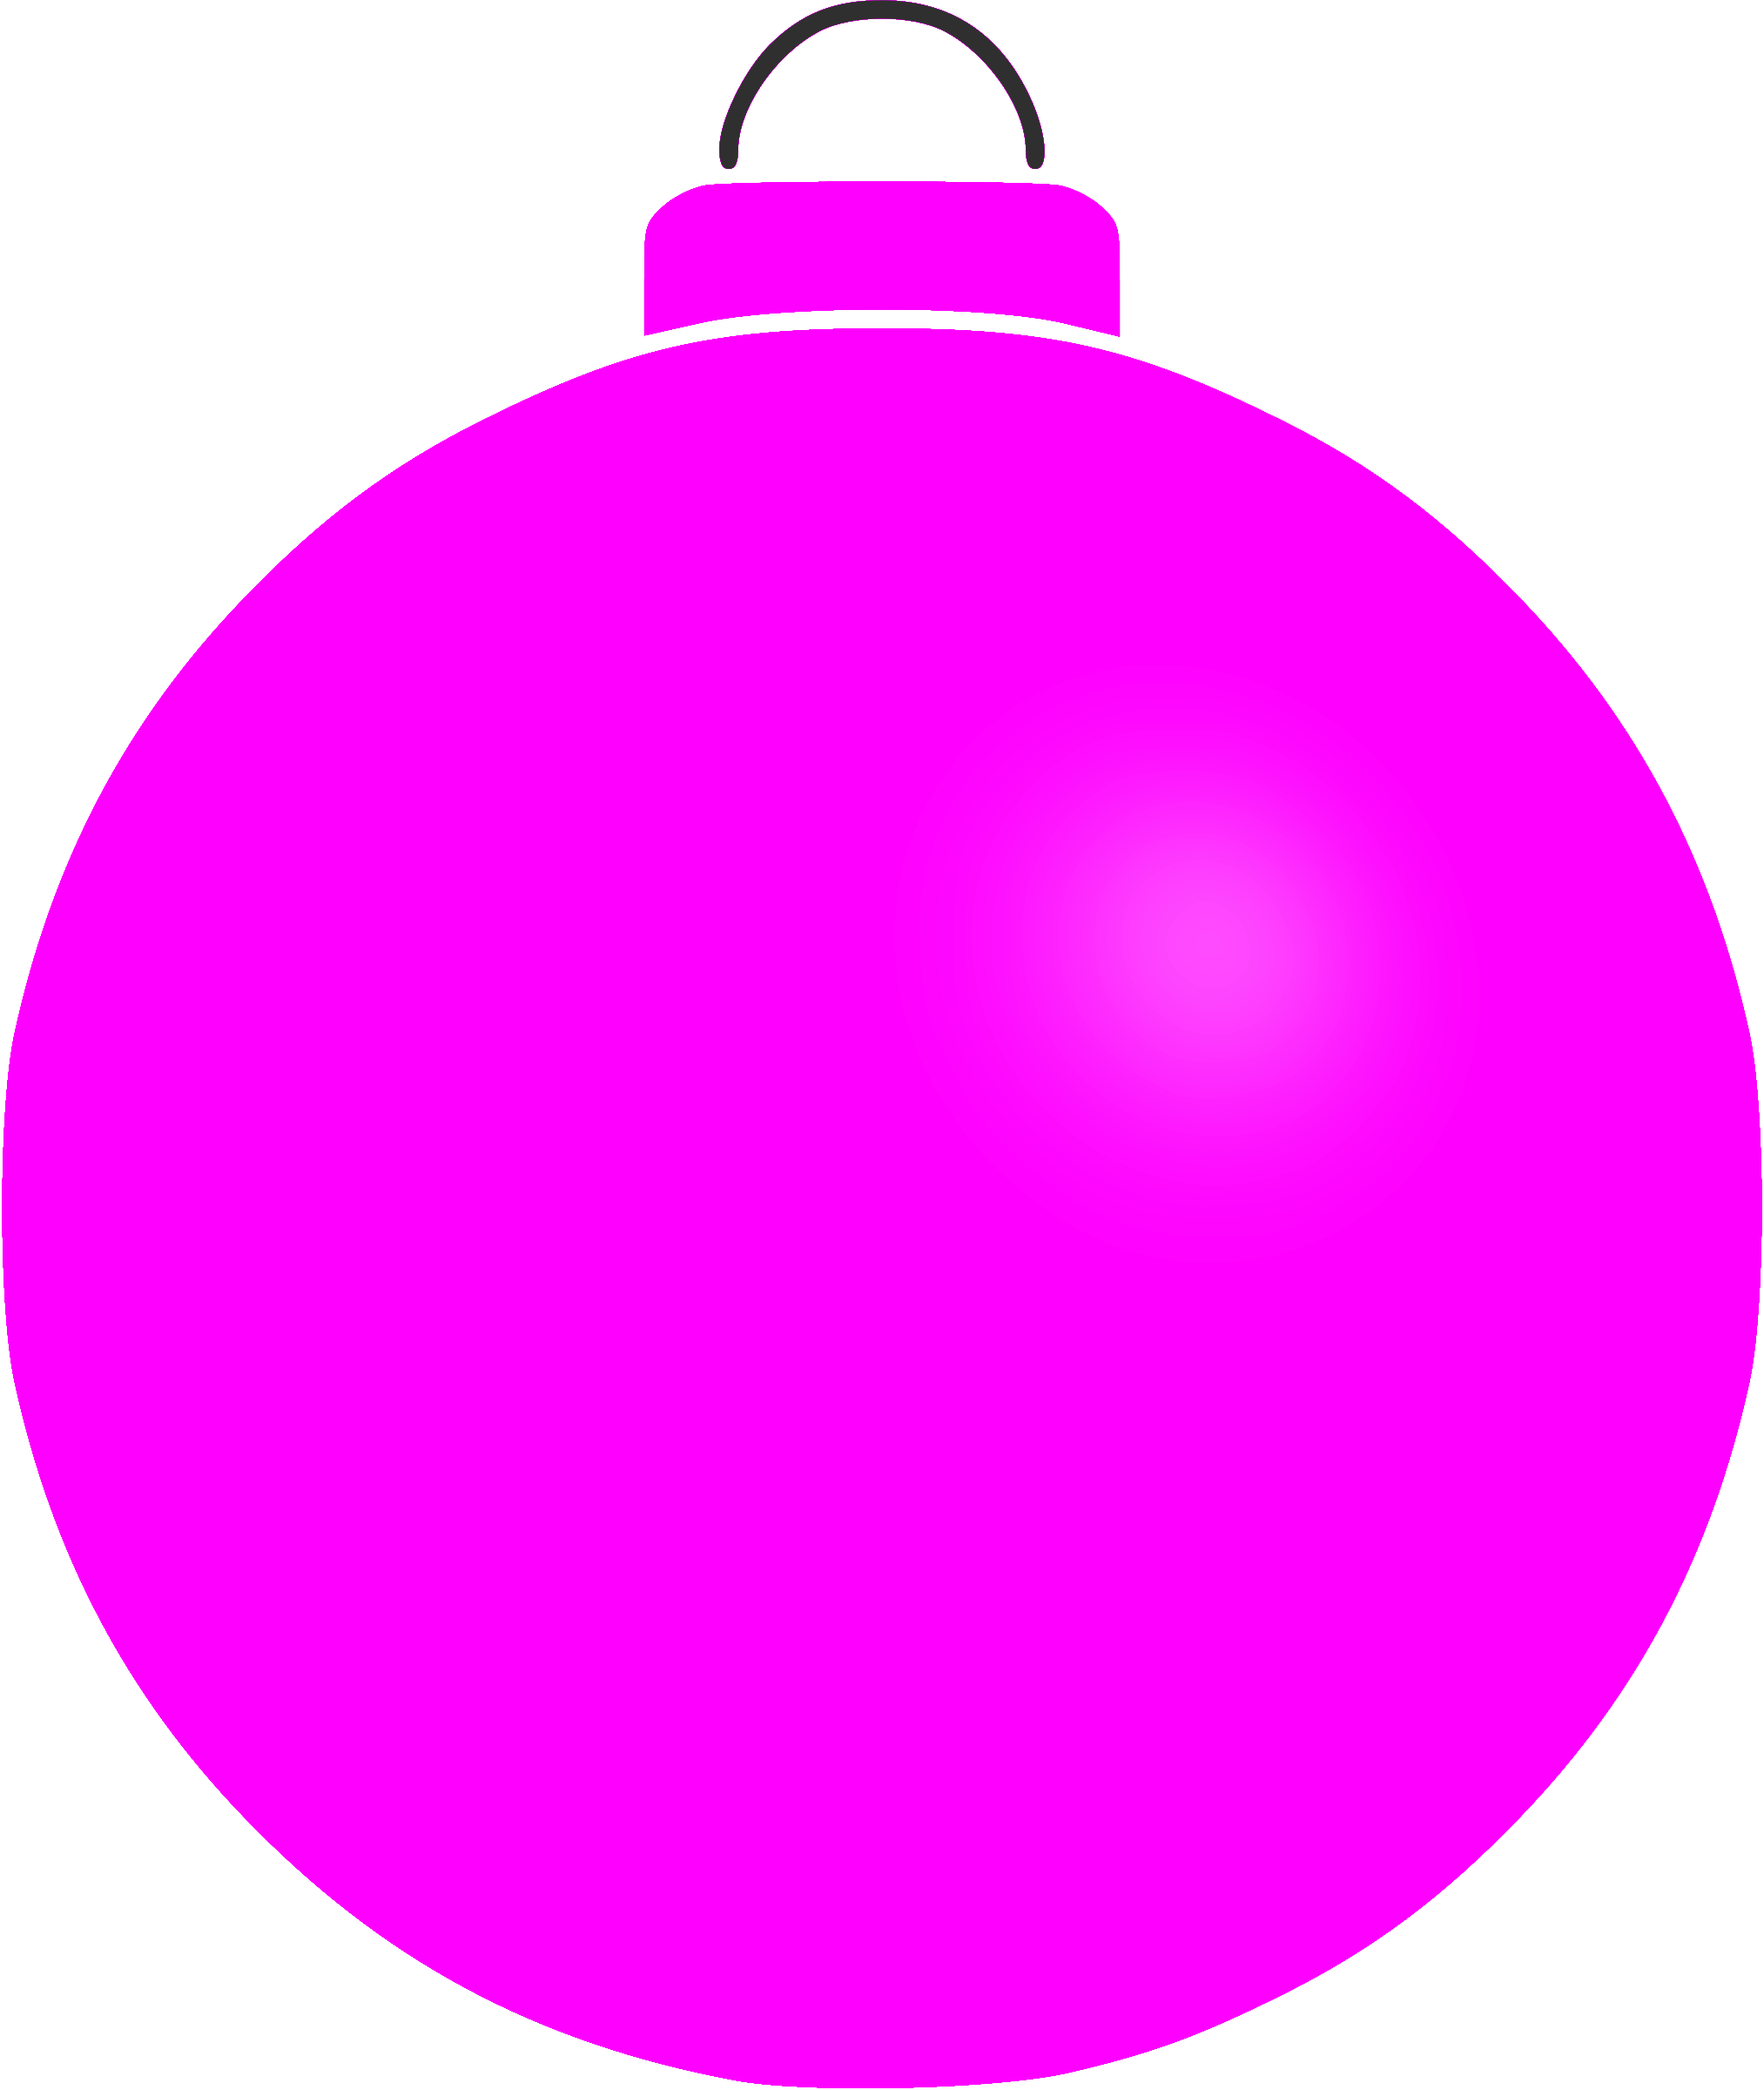 ornaments clipart pink ornament